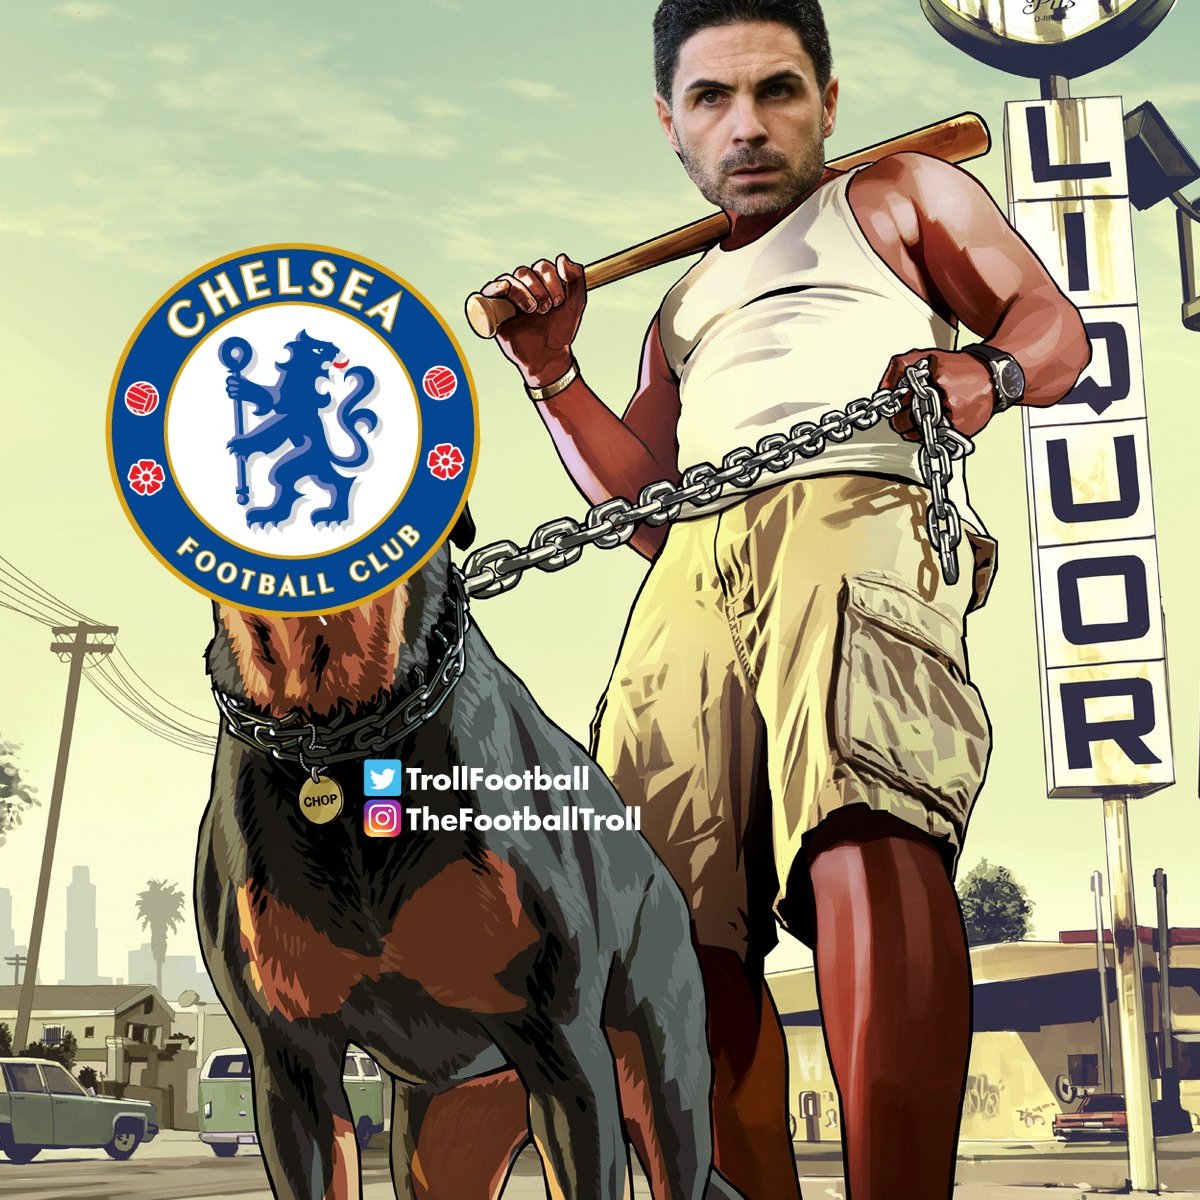 Chelsea's new owner